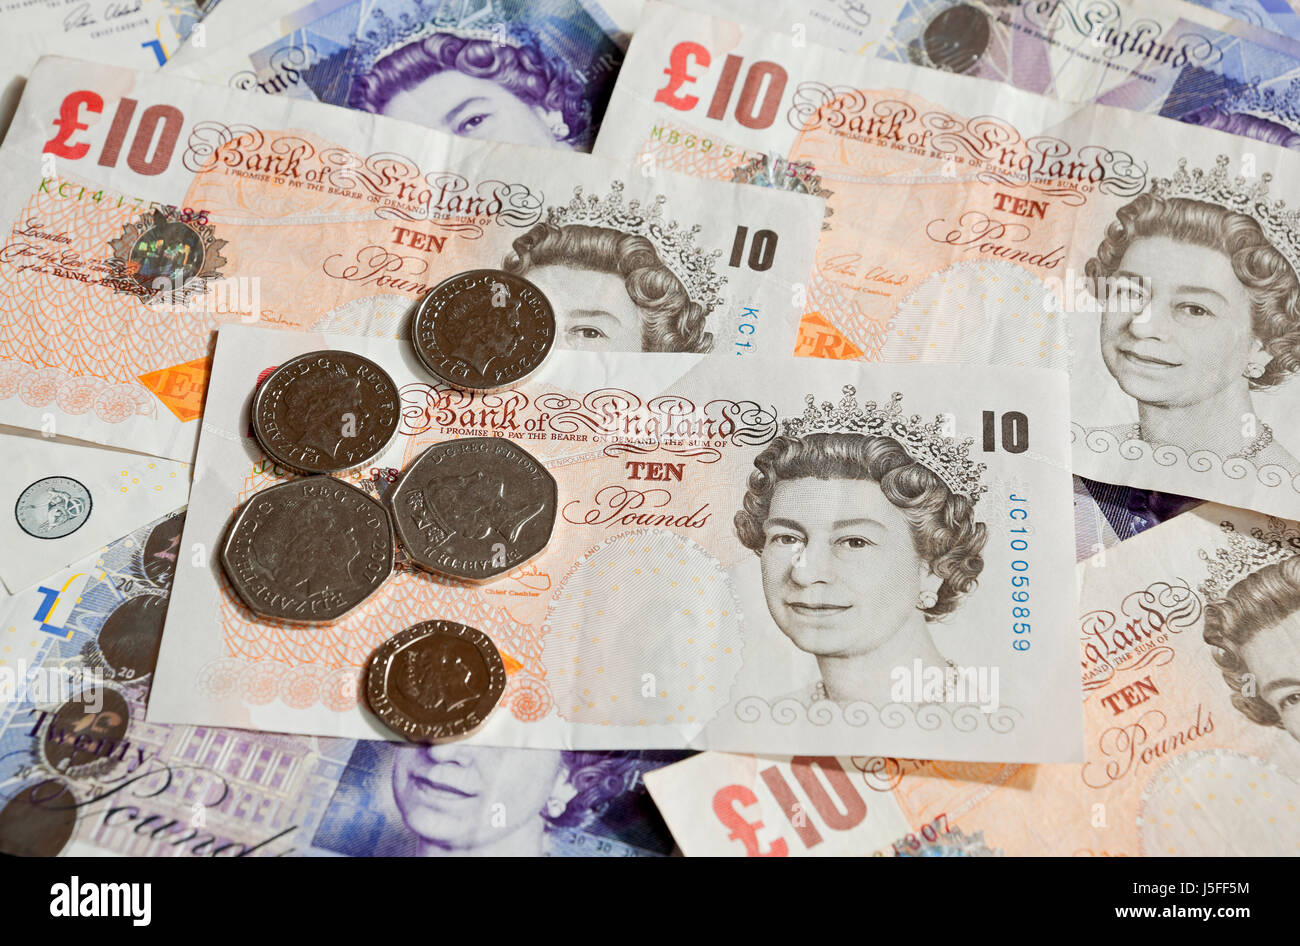 Nahaufnahme von englischem Geld £20 £10 Banknoten zehn- und zwanzig-Pfund-Banknoten Geldscheine und Münzen England Vereinigtes Königreich GB Großbritannien Stockfoto